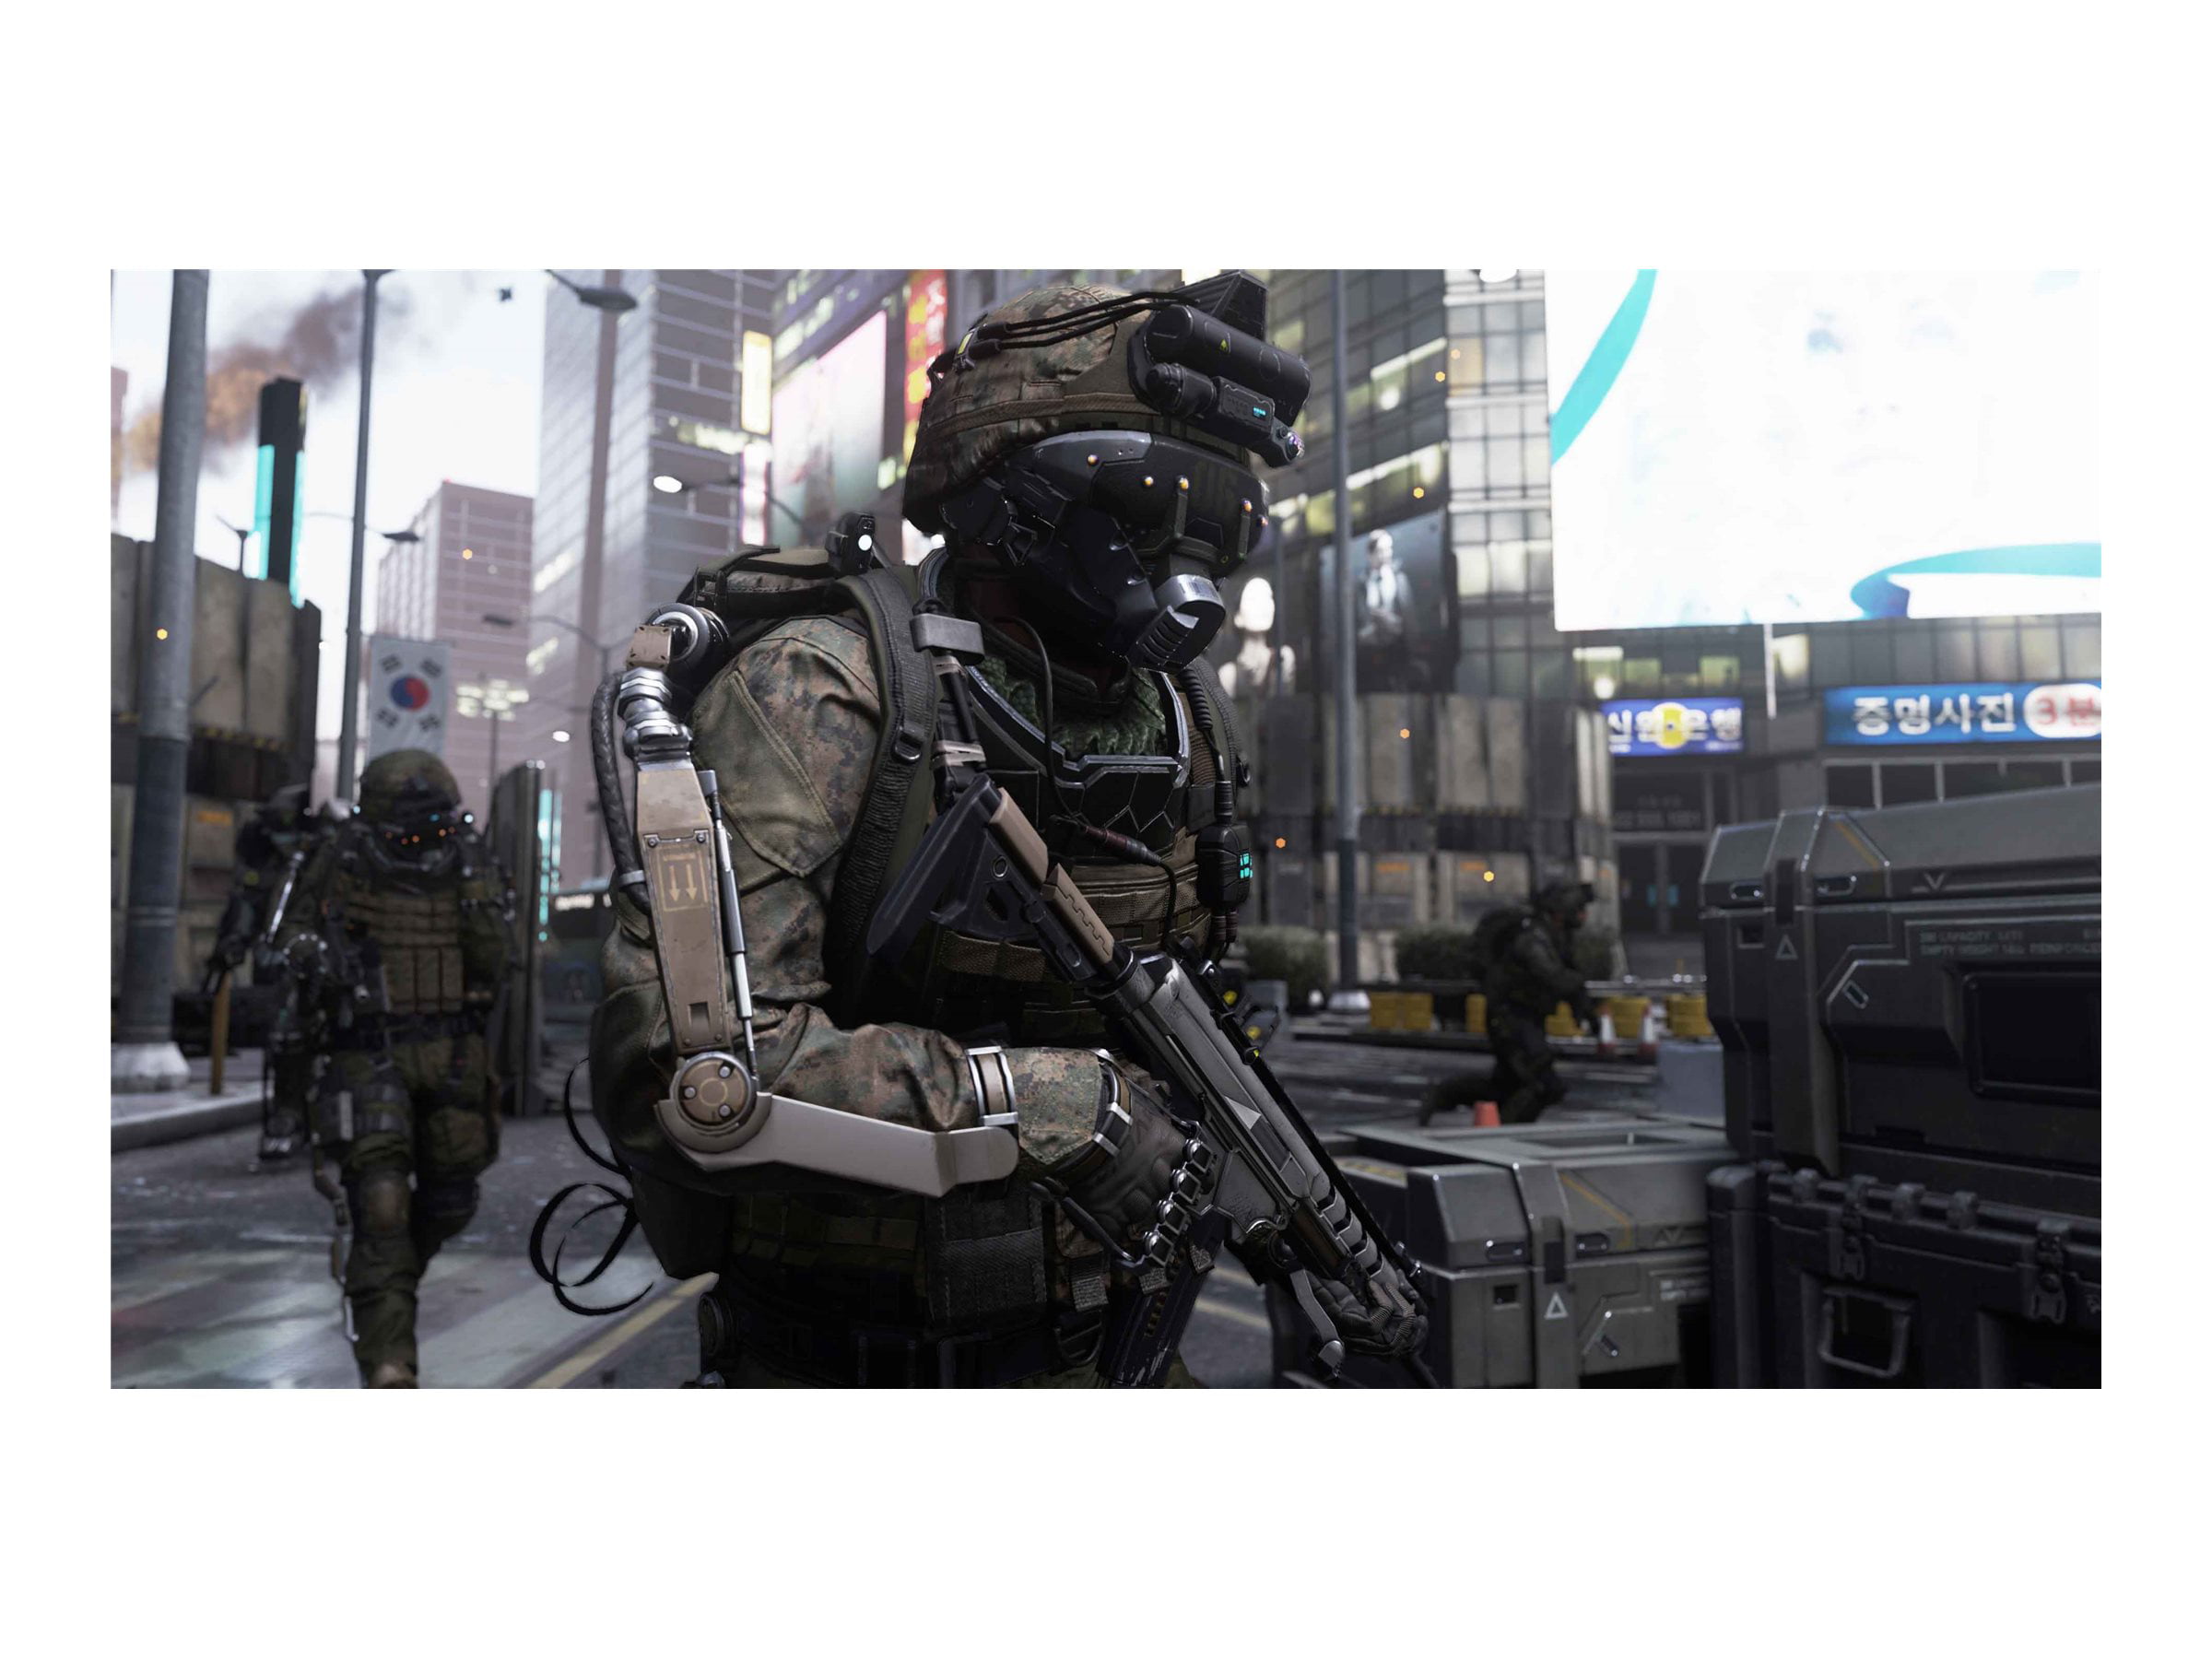 Call Of Duty: Advanced Warfare (Edição Day Zero) - Xbox 360, Jogo de  Videogame Xbox Usado 91801512